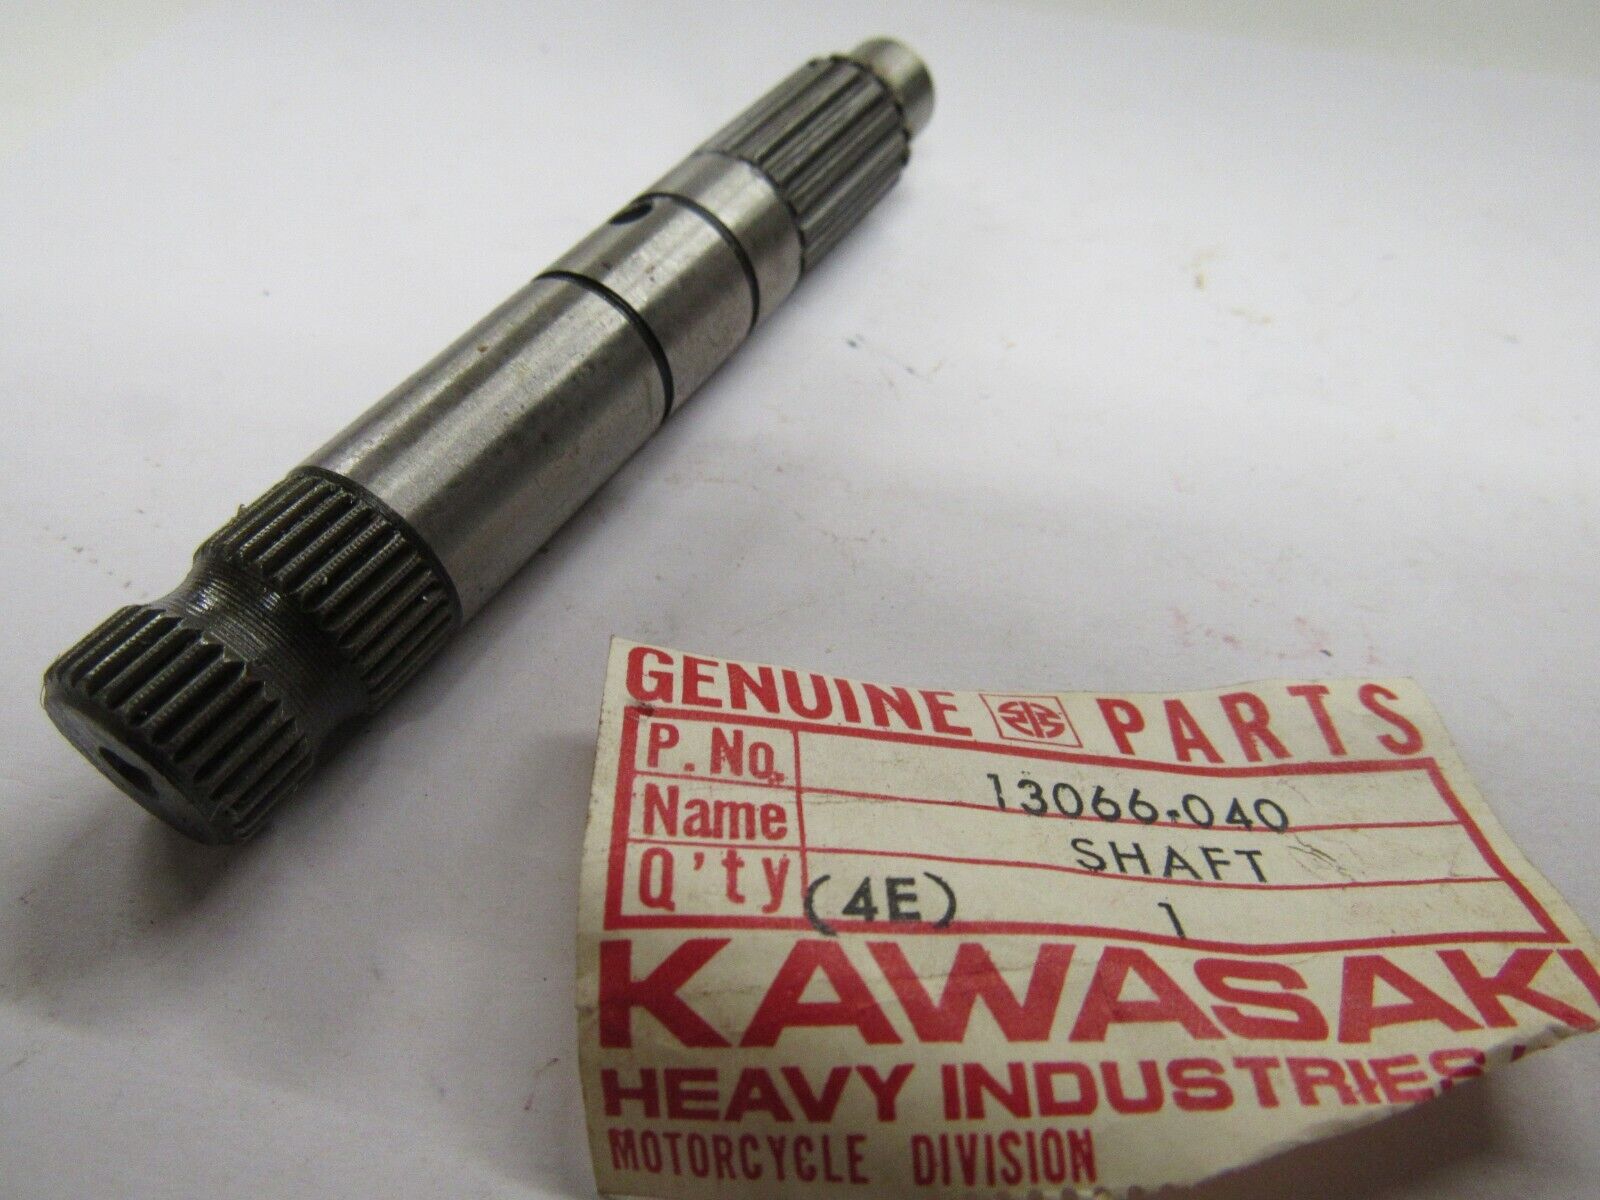 NOS Kawasaki Kickstarter Shaft  1974 1975 1976 KX125 KX 125 13066-040